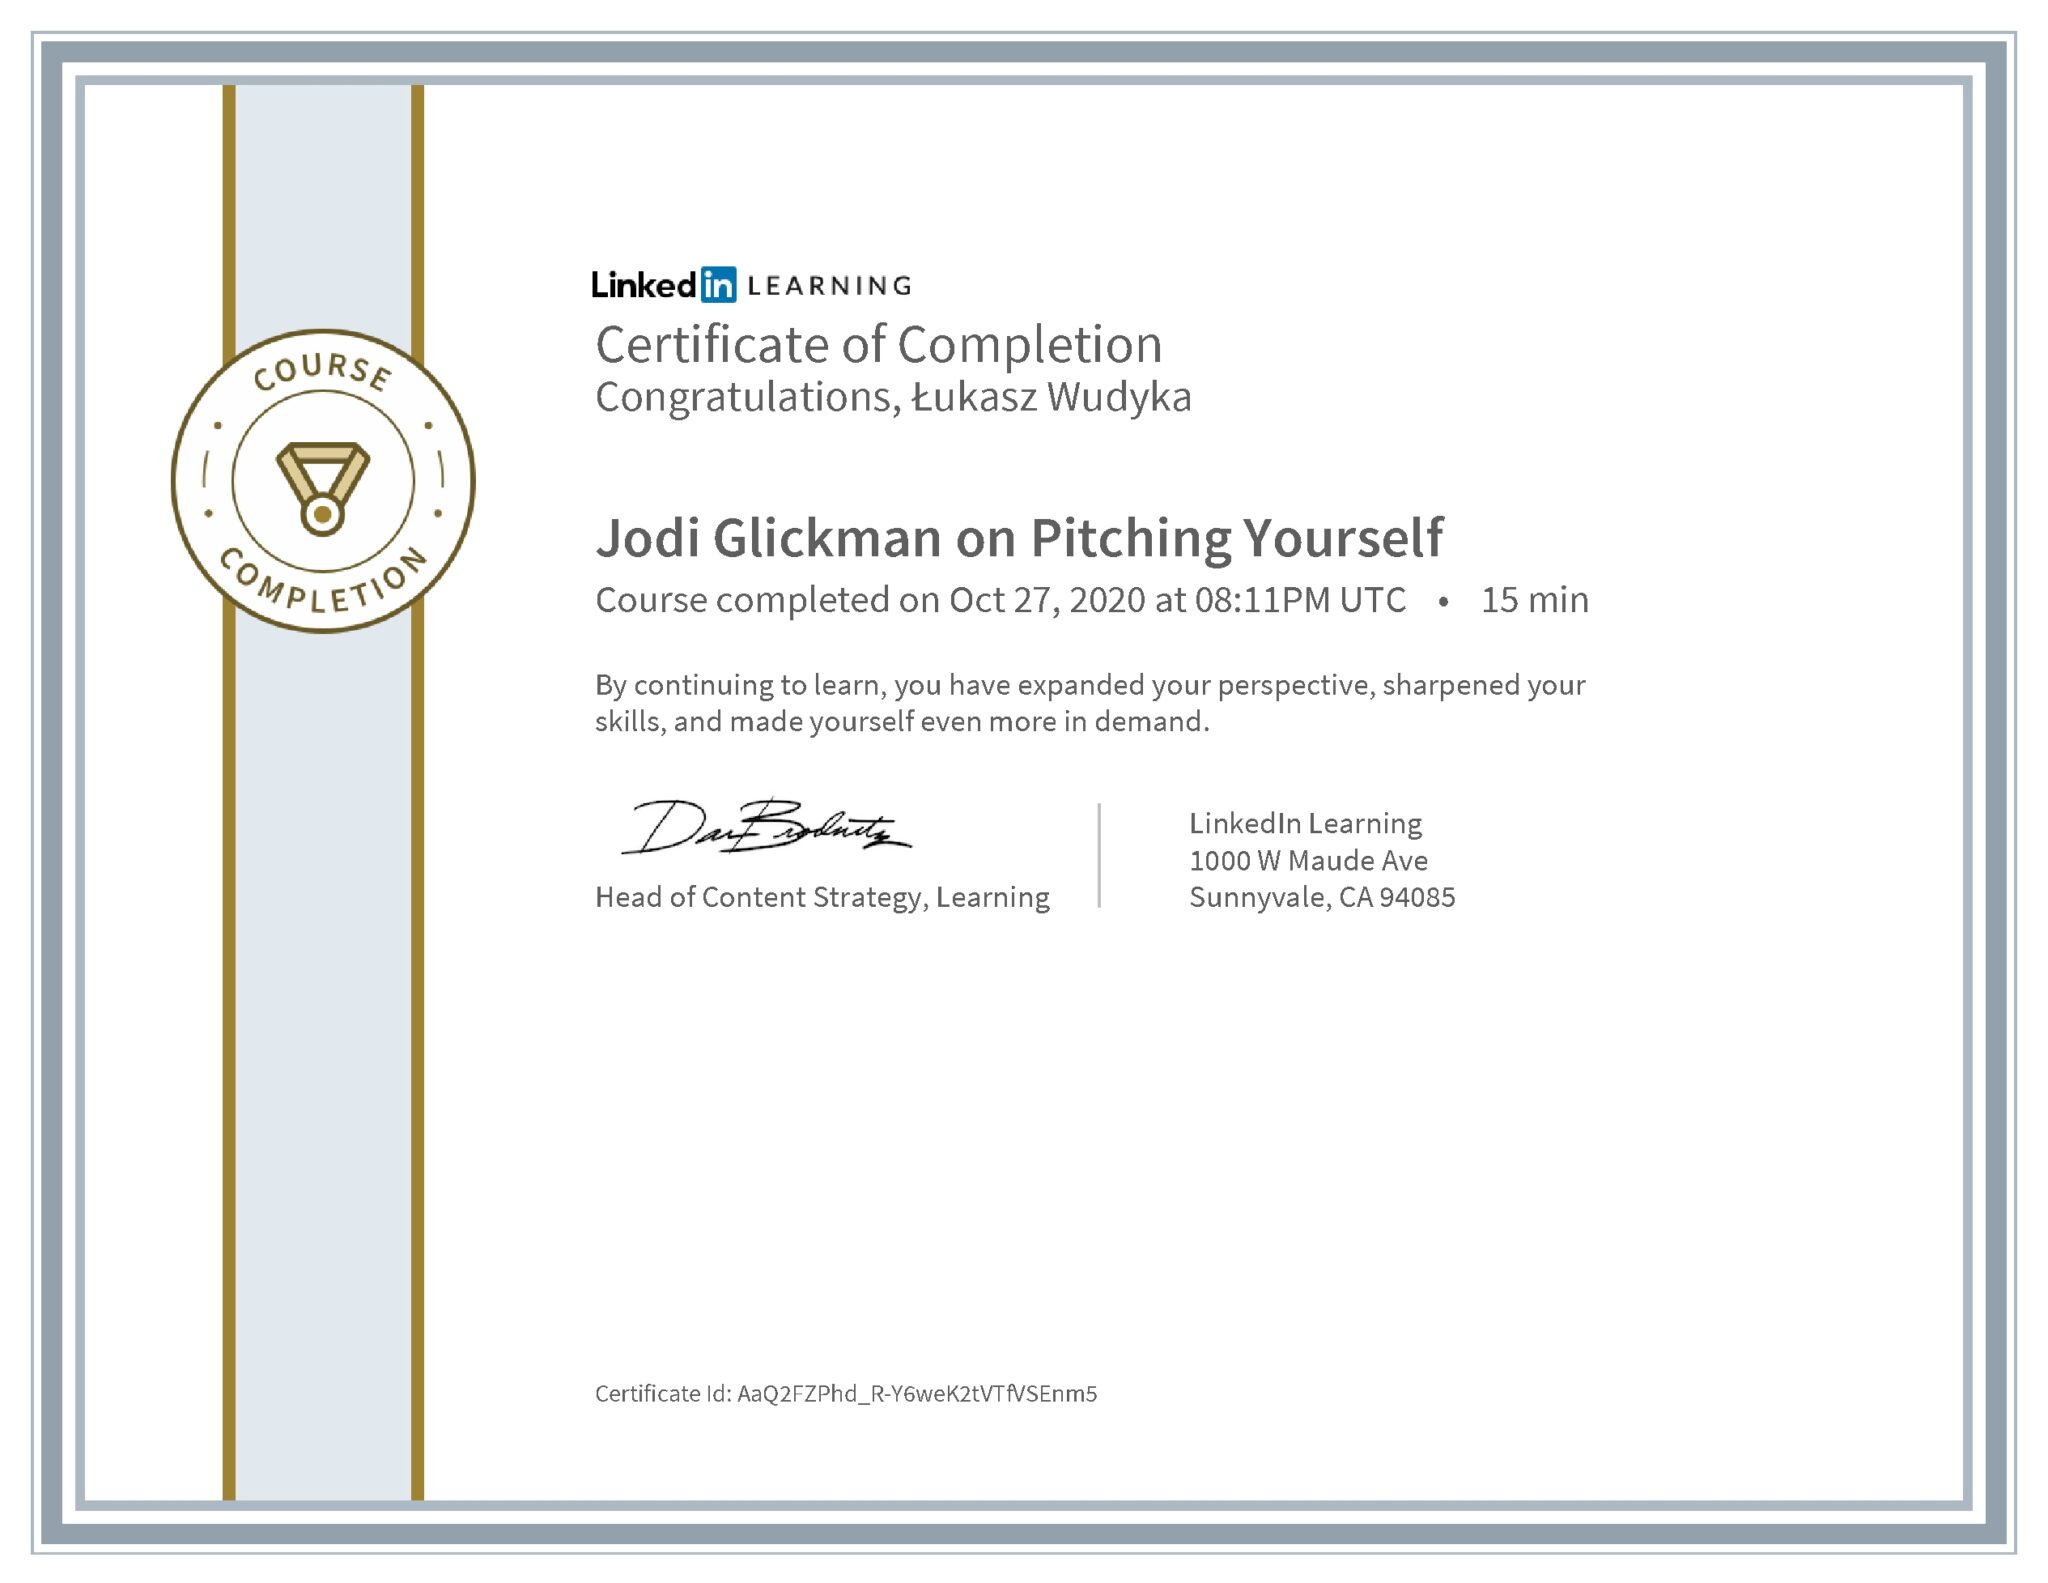 Łukasz Wudyka certyfikat LinkedIn Jodi Glickman on Pitching Yourself